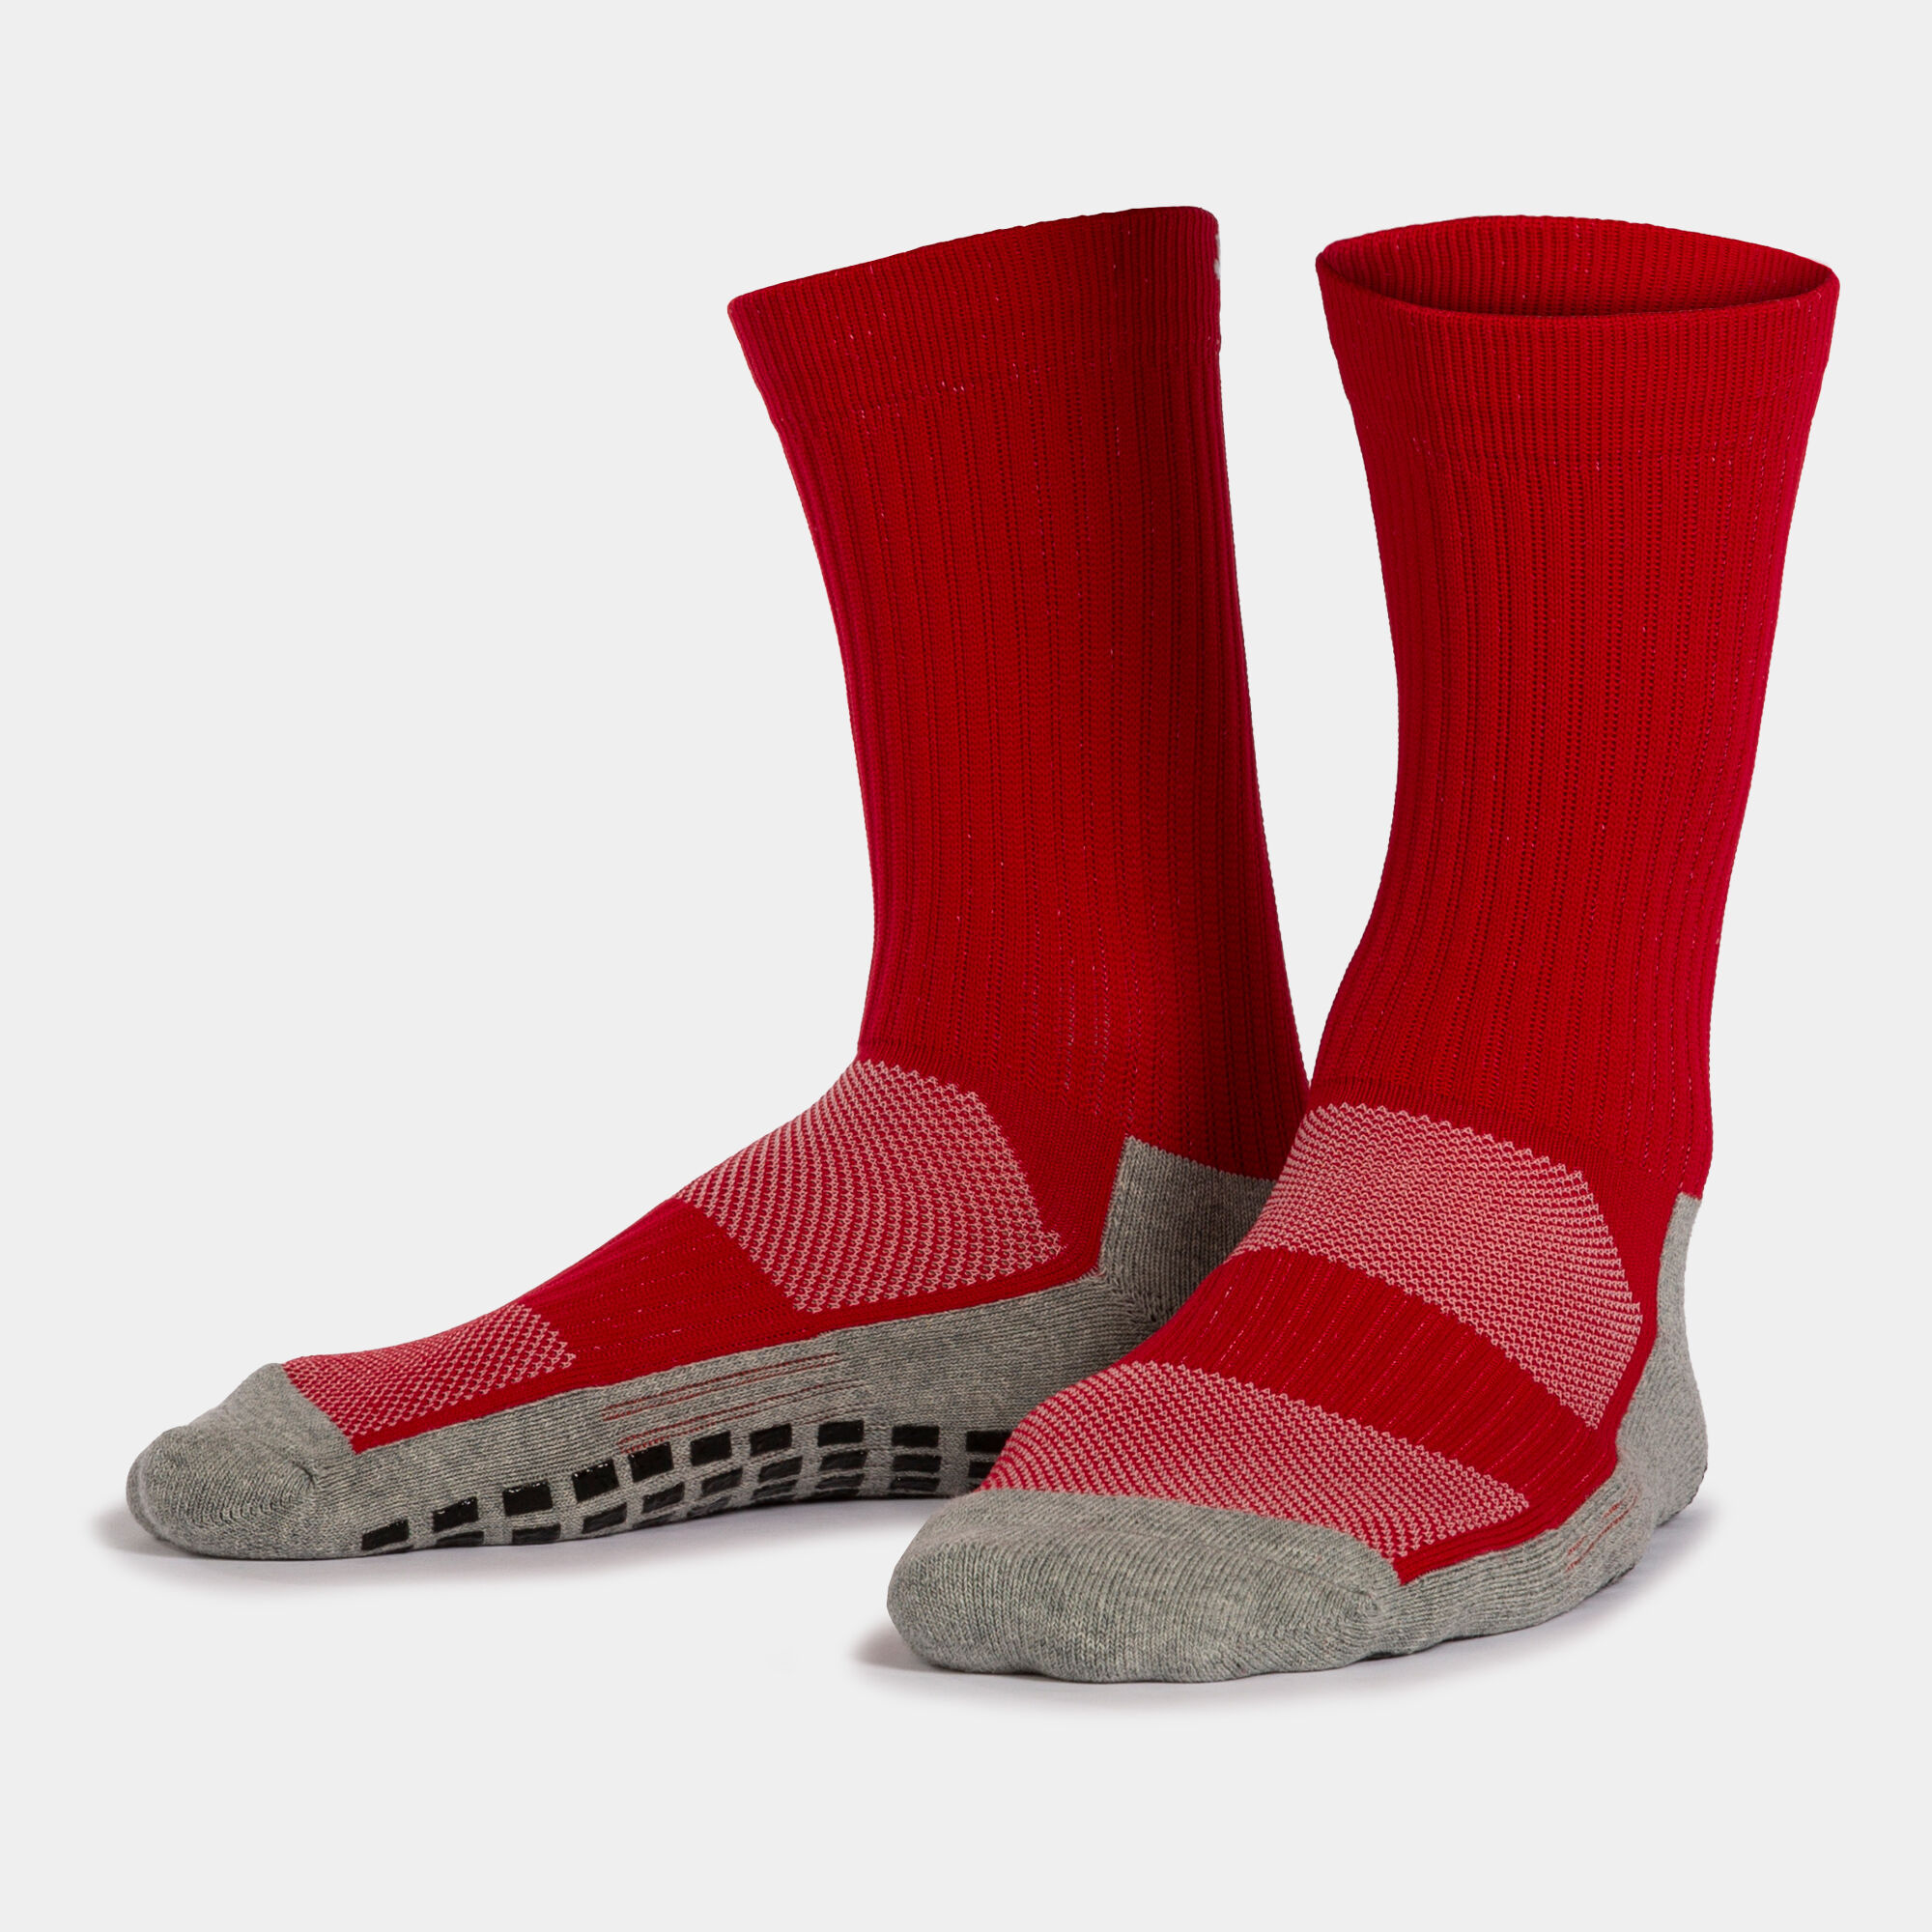 Chaussettes unisexe Anti-Slip rouge